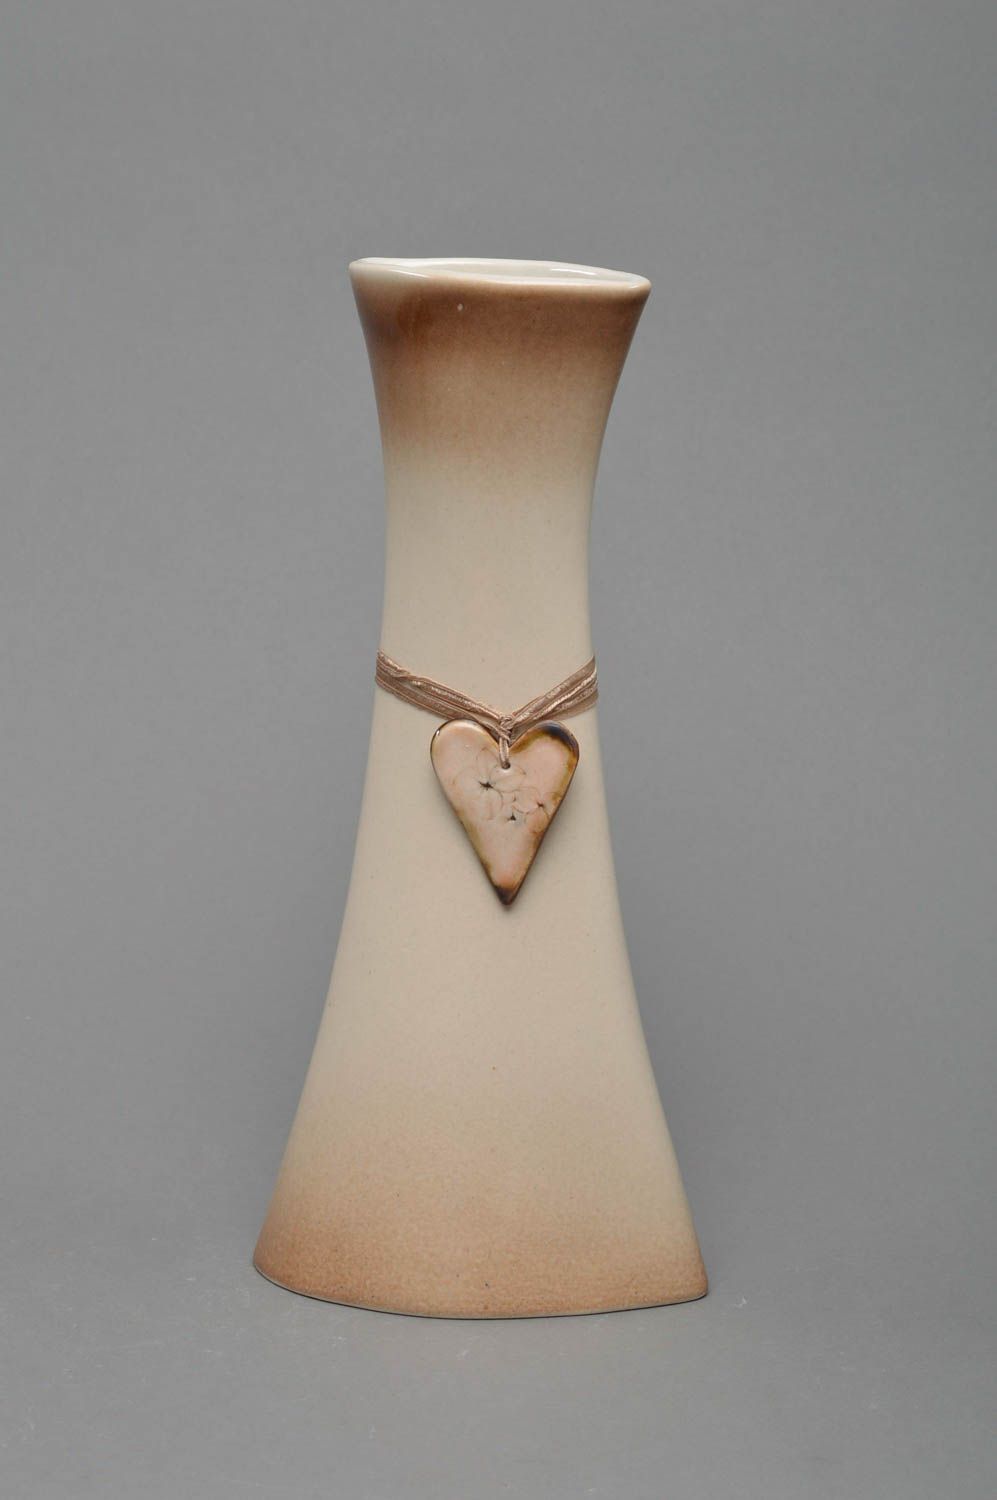 Vase en porcelaine haut beige de forme originale fait main décoré de coeur photo 1